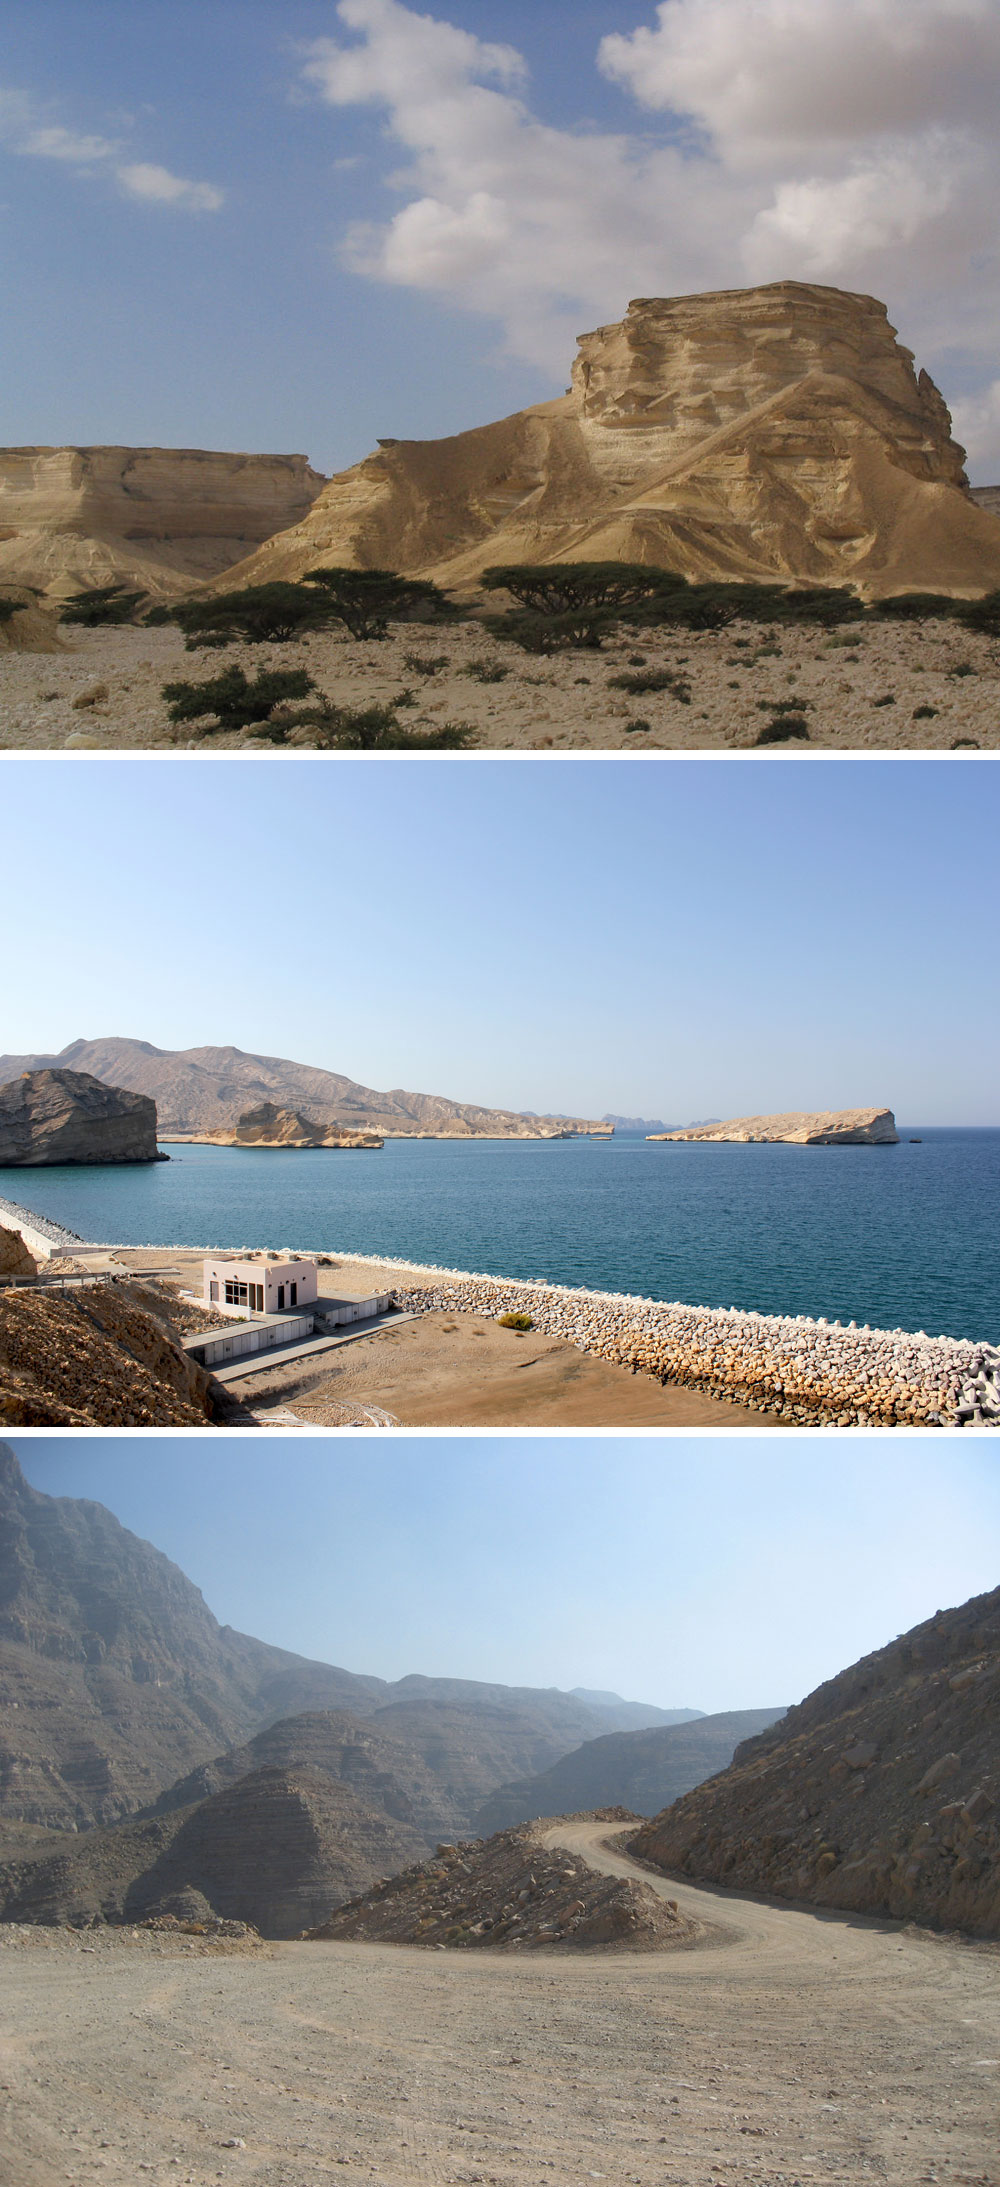 I Oman er der ørkensletter, bjerge og hav.